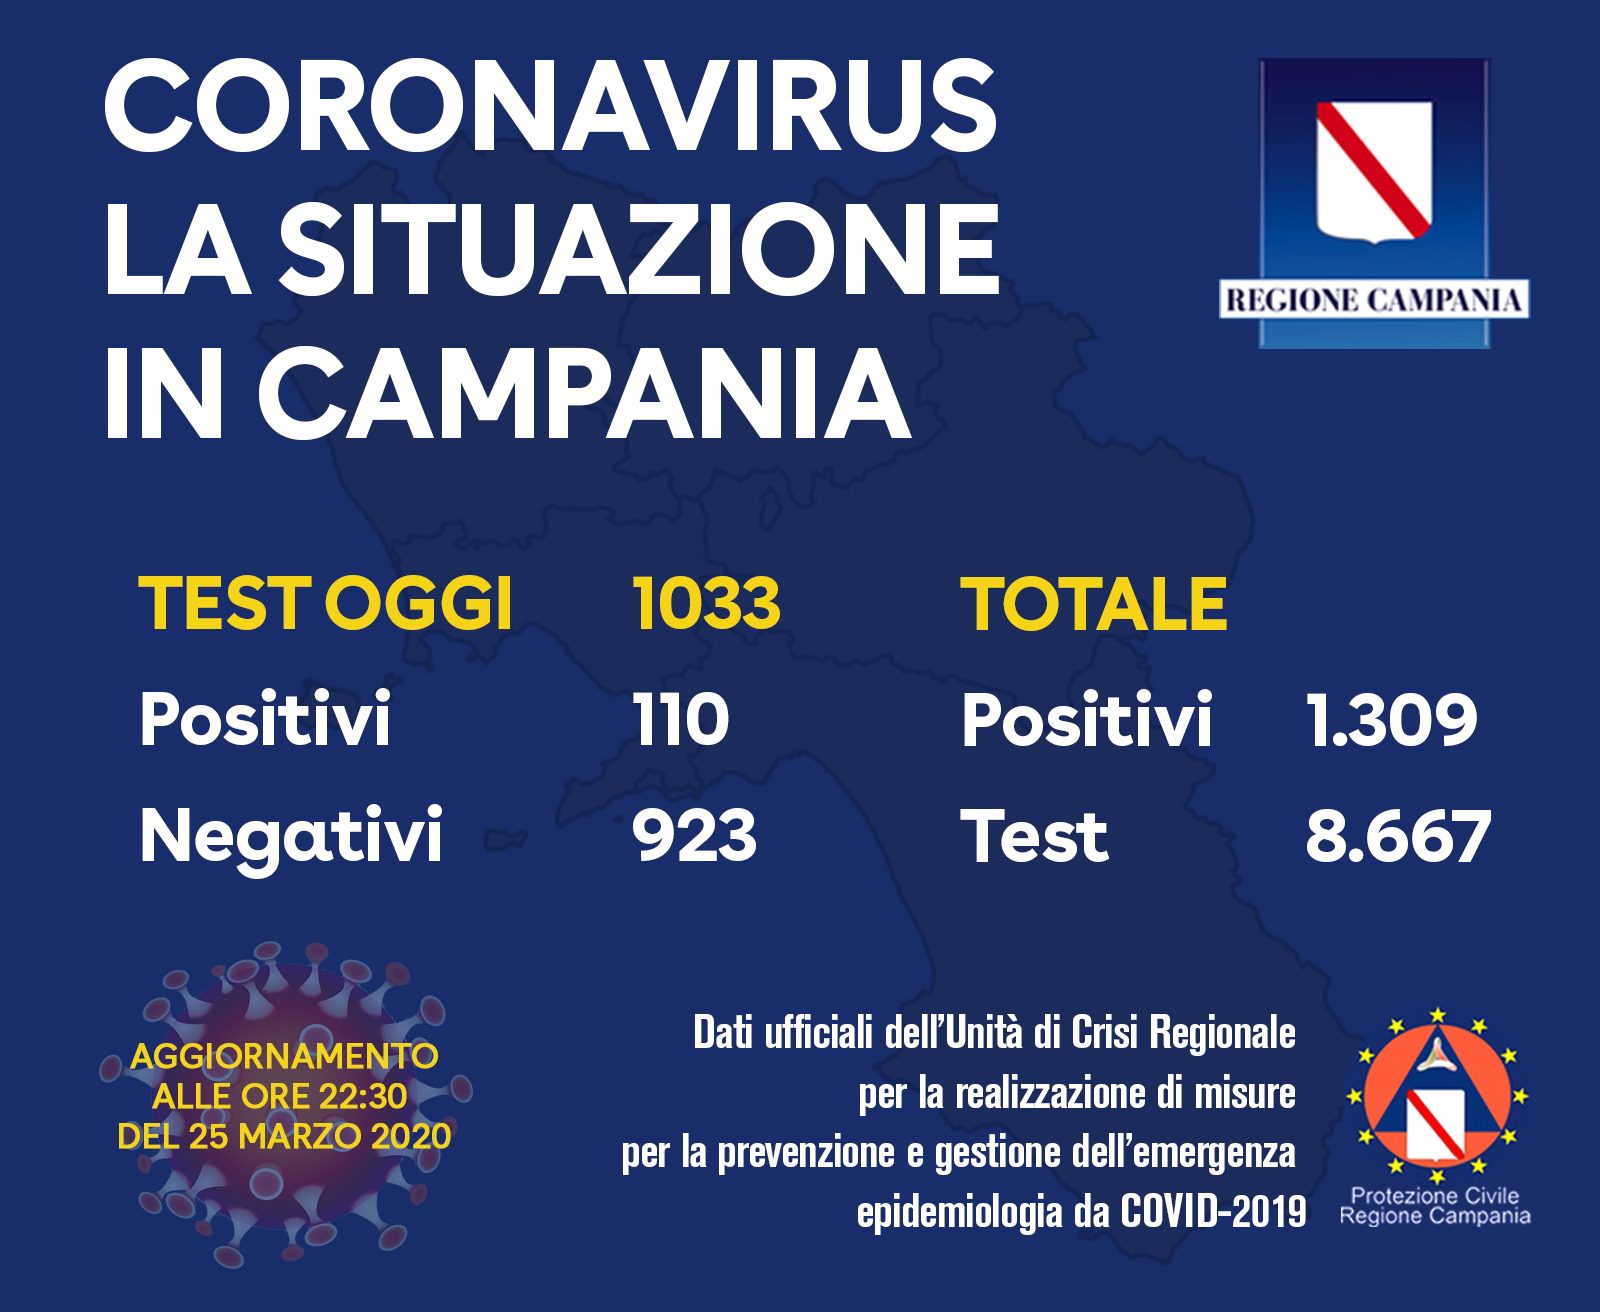 Coronavirus, sono 1309 i casi in Campania